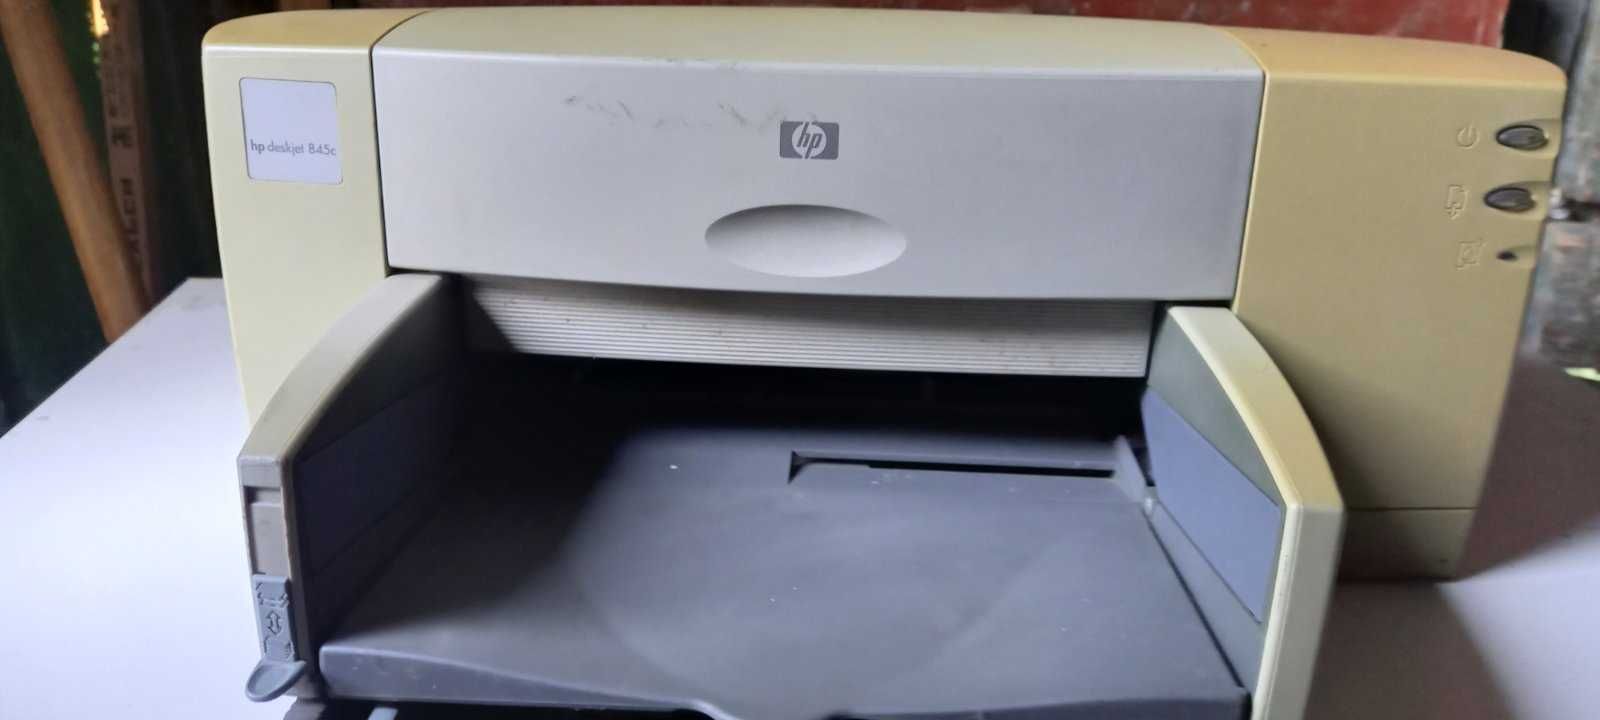 Кольоровий струменевий принтер Hр DеskJеt 845С Стpуйный принтер